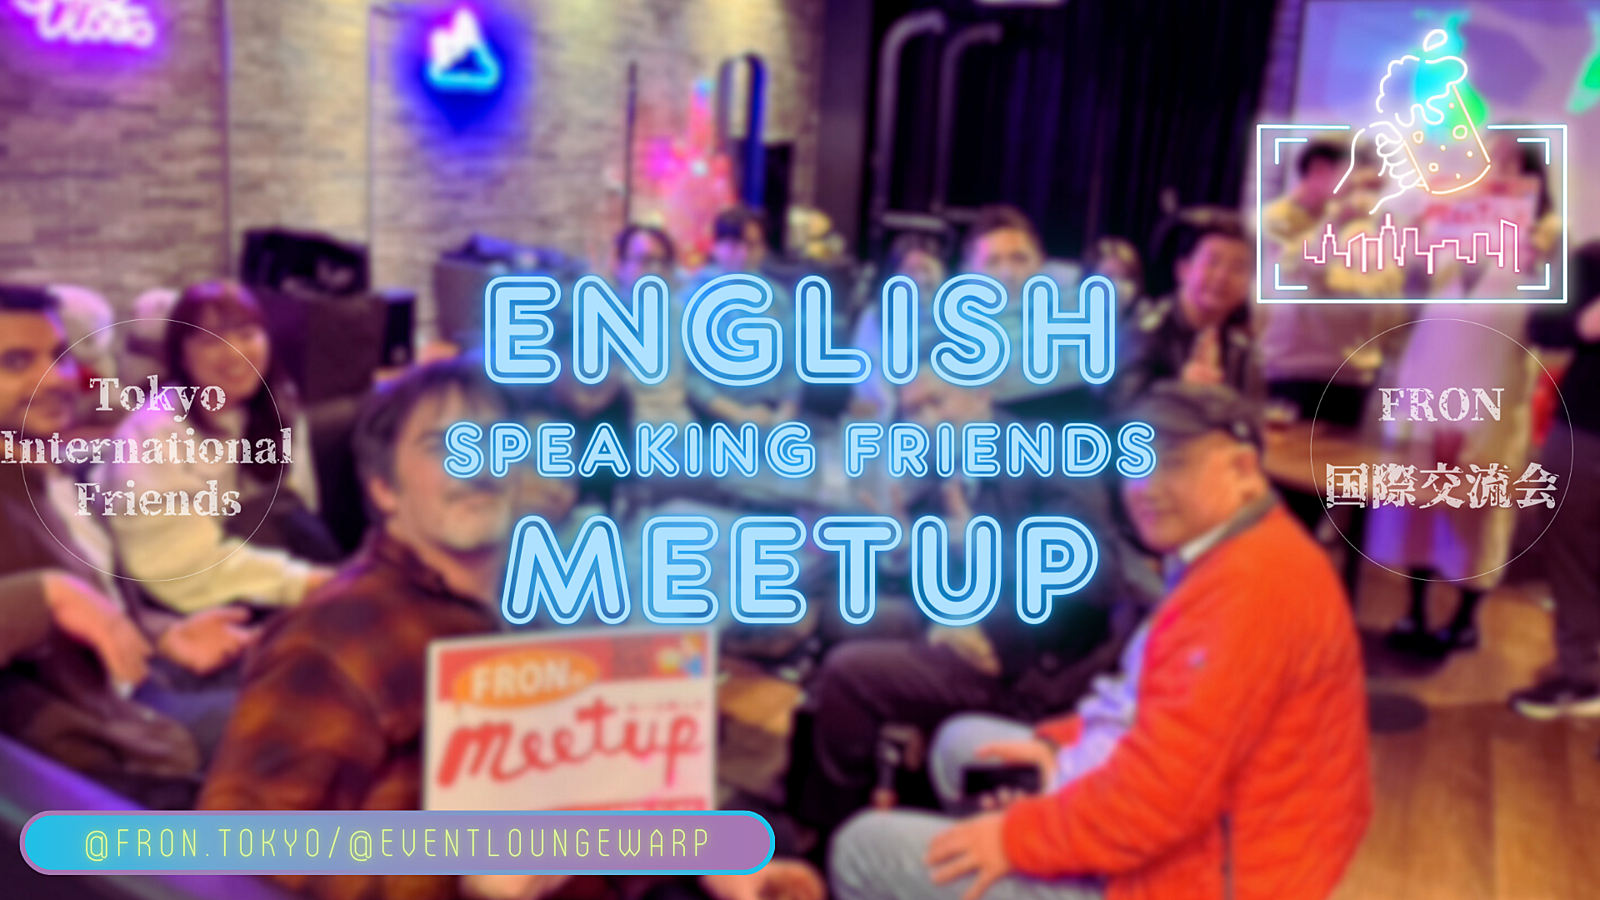  4/6(土)14:00~ 英語交流会 🇬🇧 English Speaking Friends Meetup☆Saturday, April 6th♪